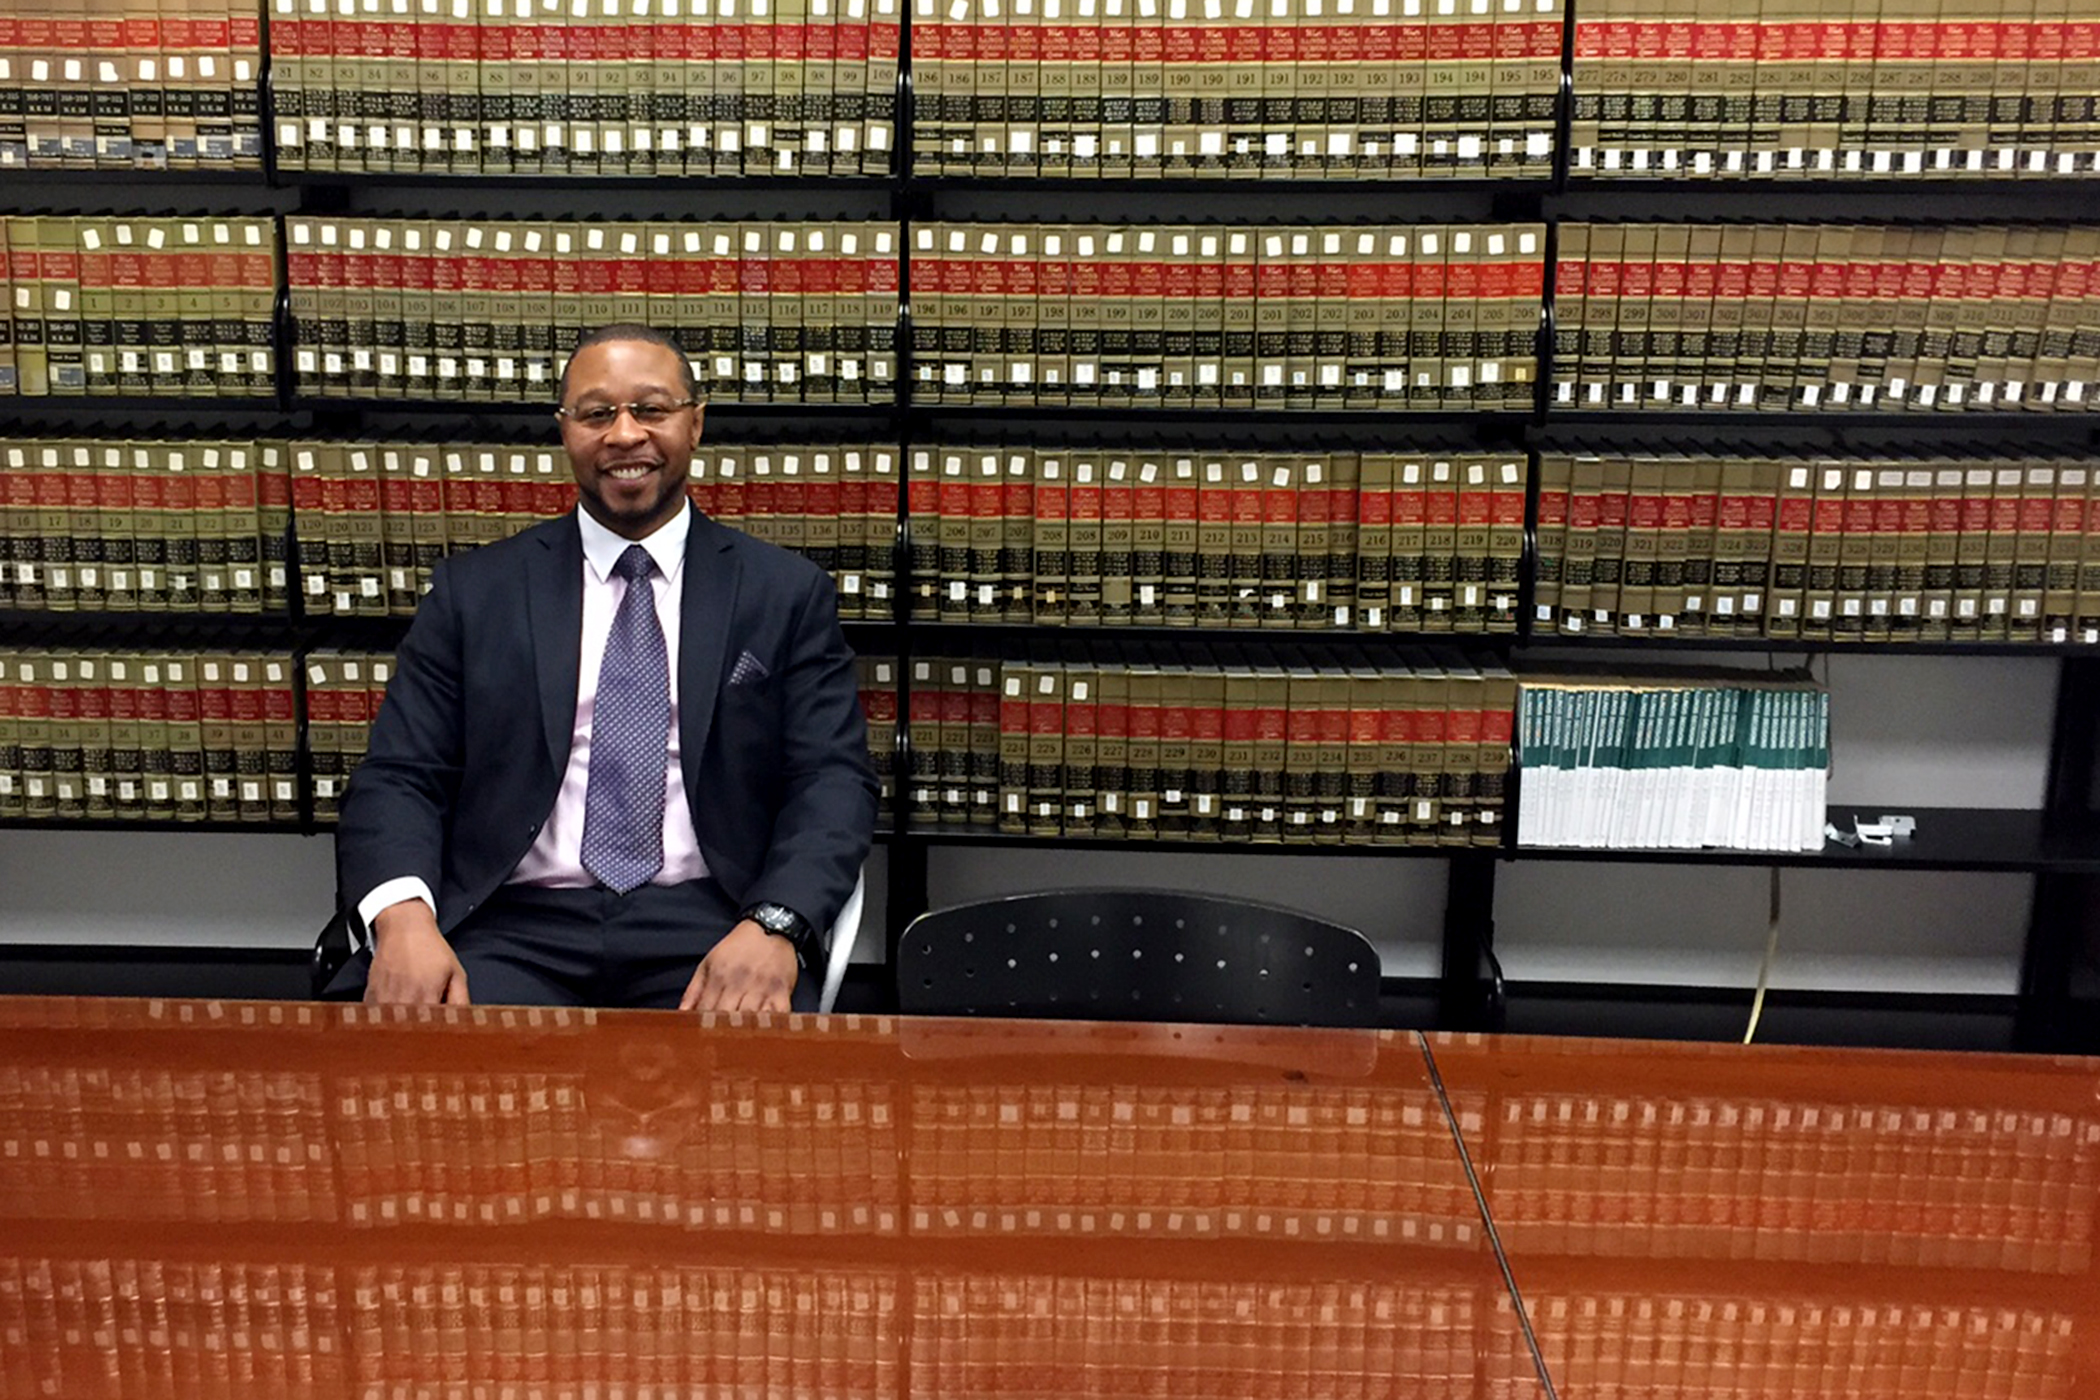 Jarrett Adams' unlikely path from prison to lawyer